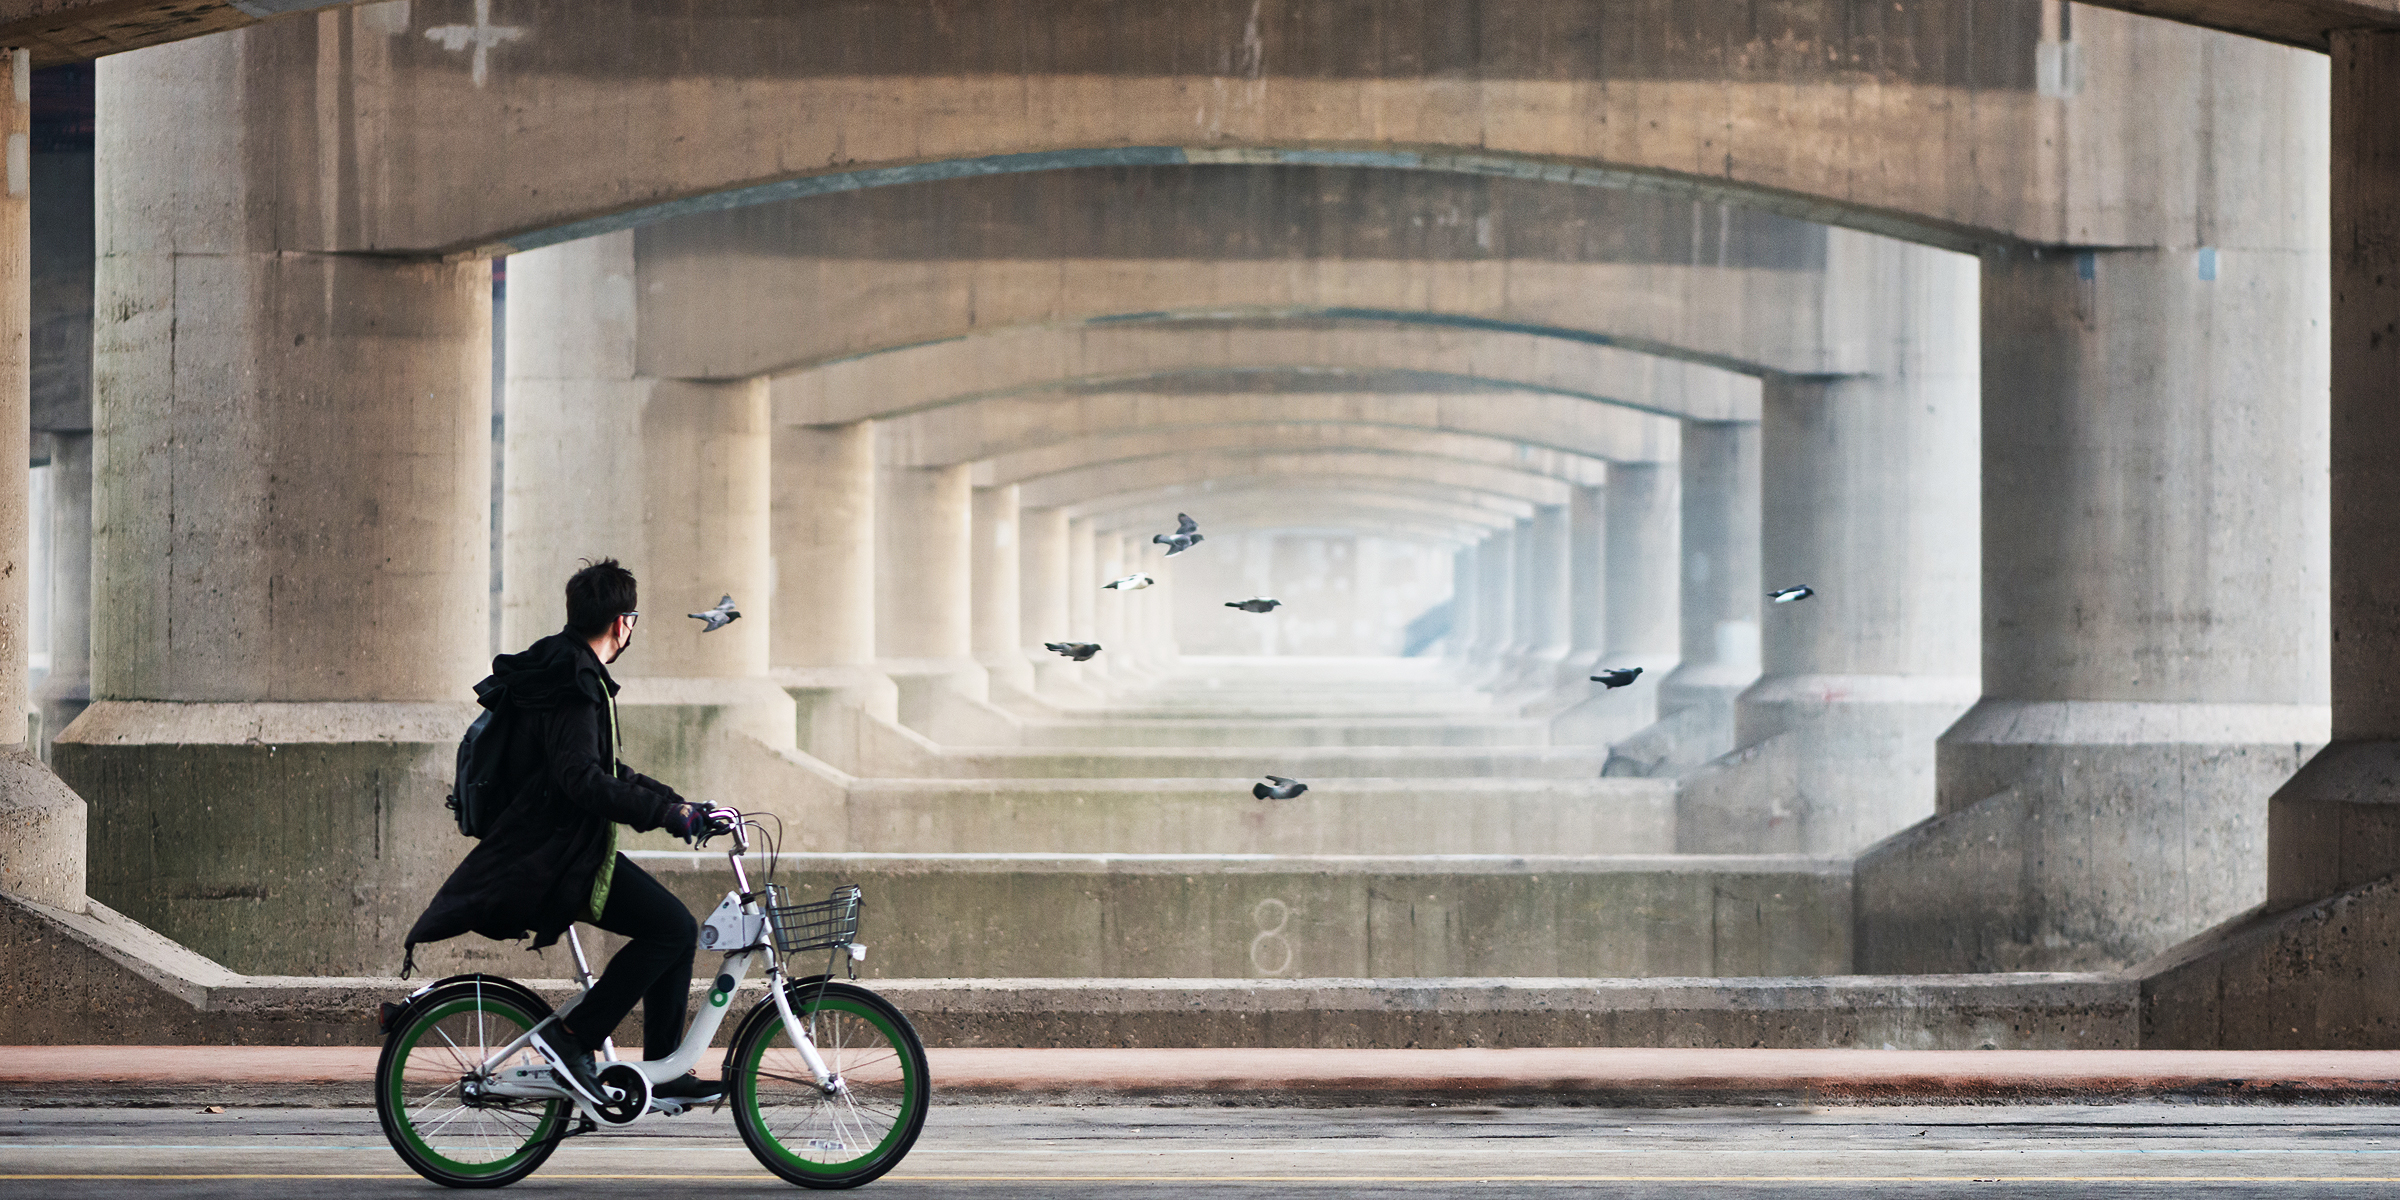 Eine Person auf einem Fahrrad | Quelle: Shutterstock